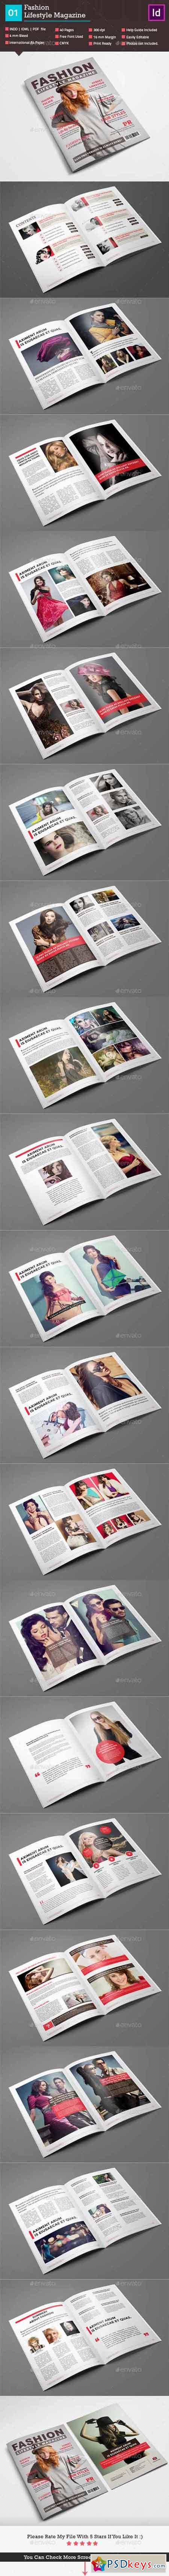 Fashion Lifestyle Magazine_Indesign 40 Page_V1 9145488